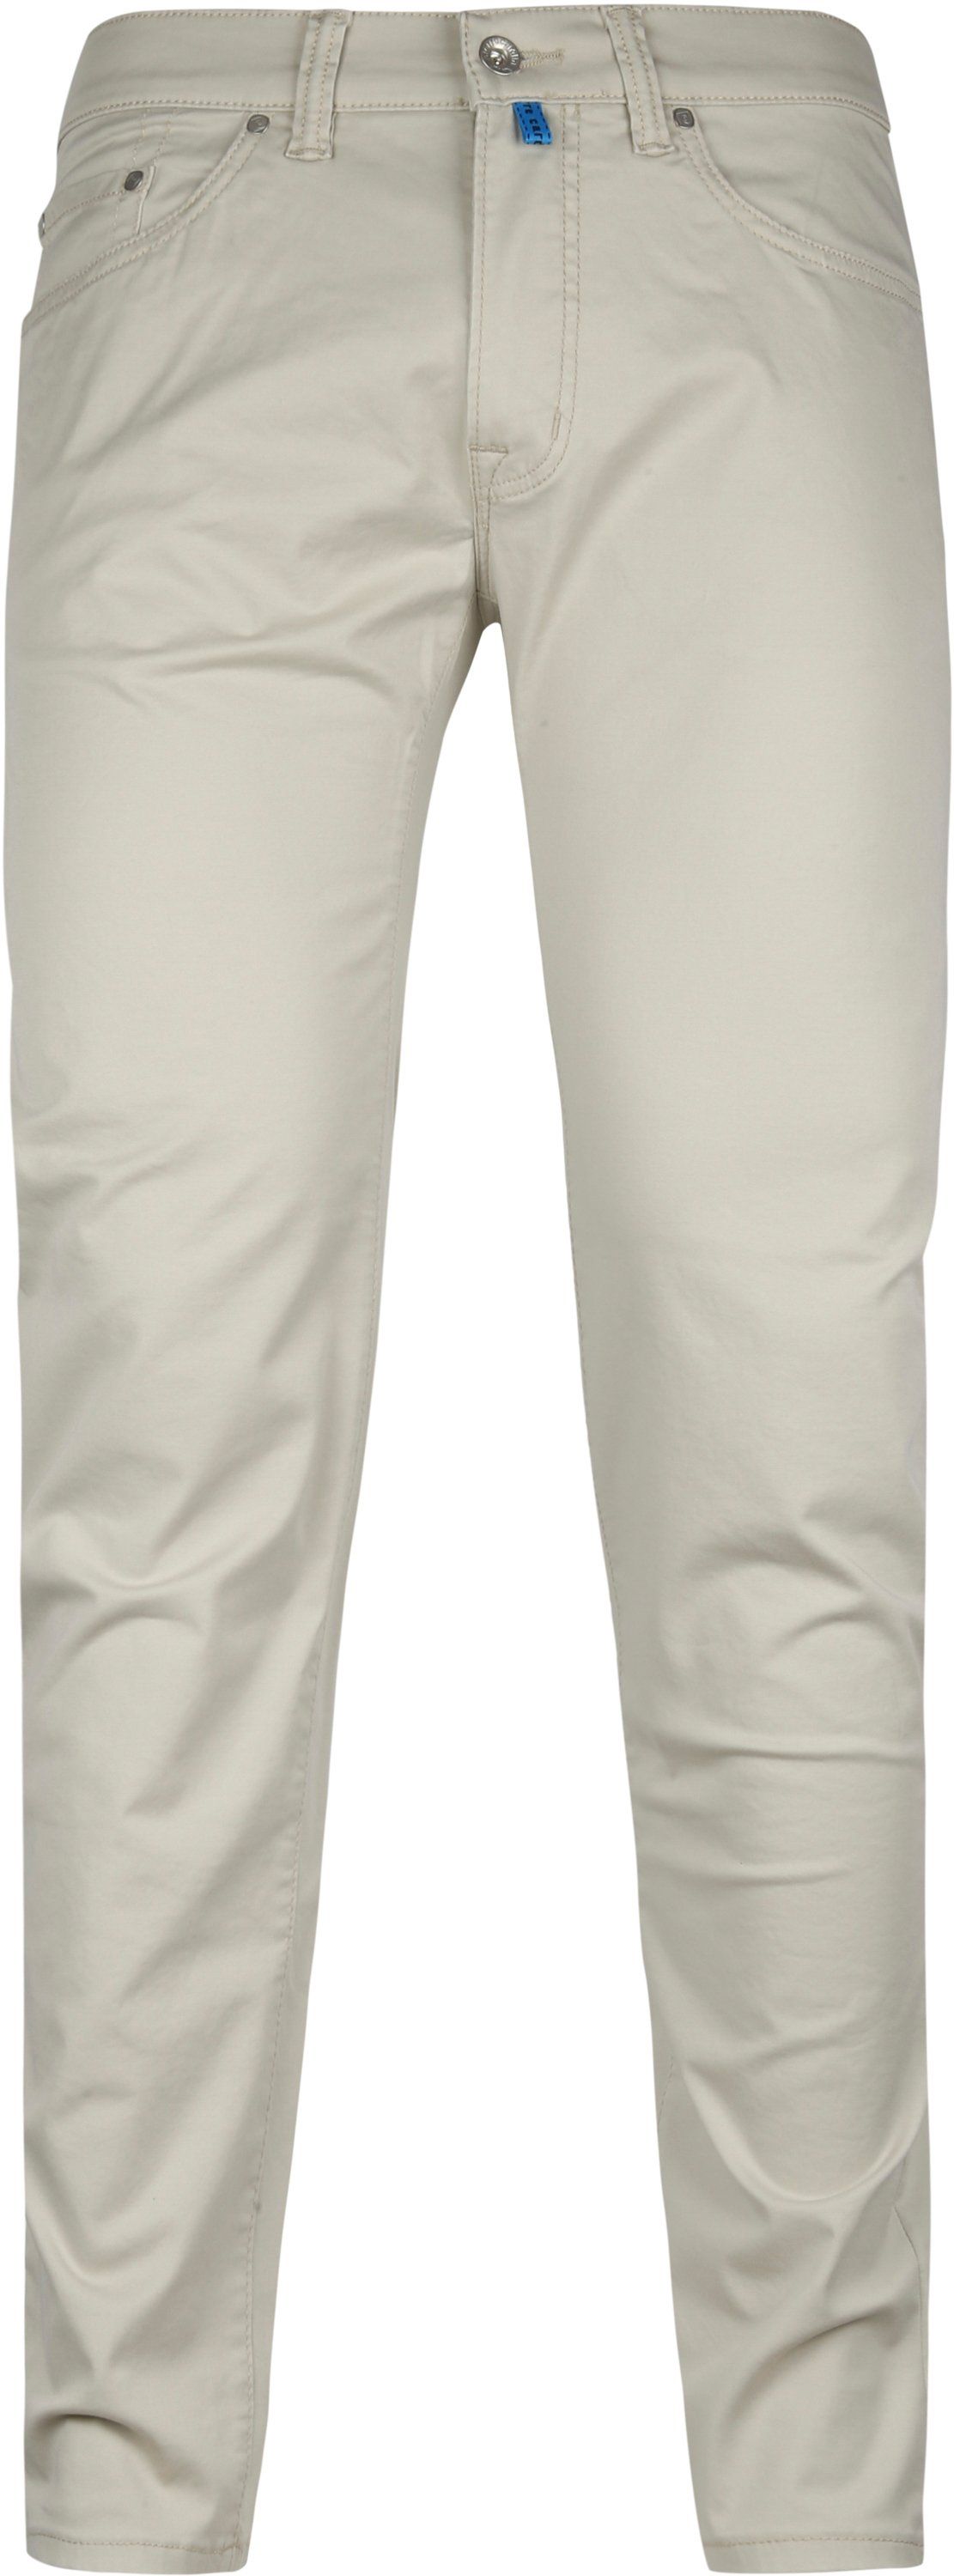 Pierre Cardin Jeans Antibes Beige size W 31